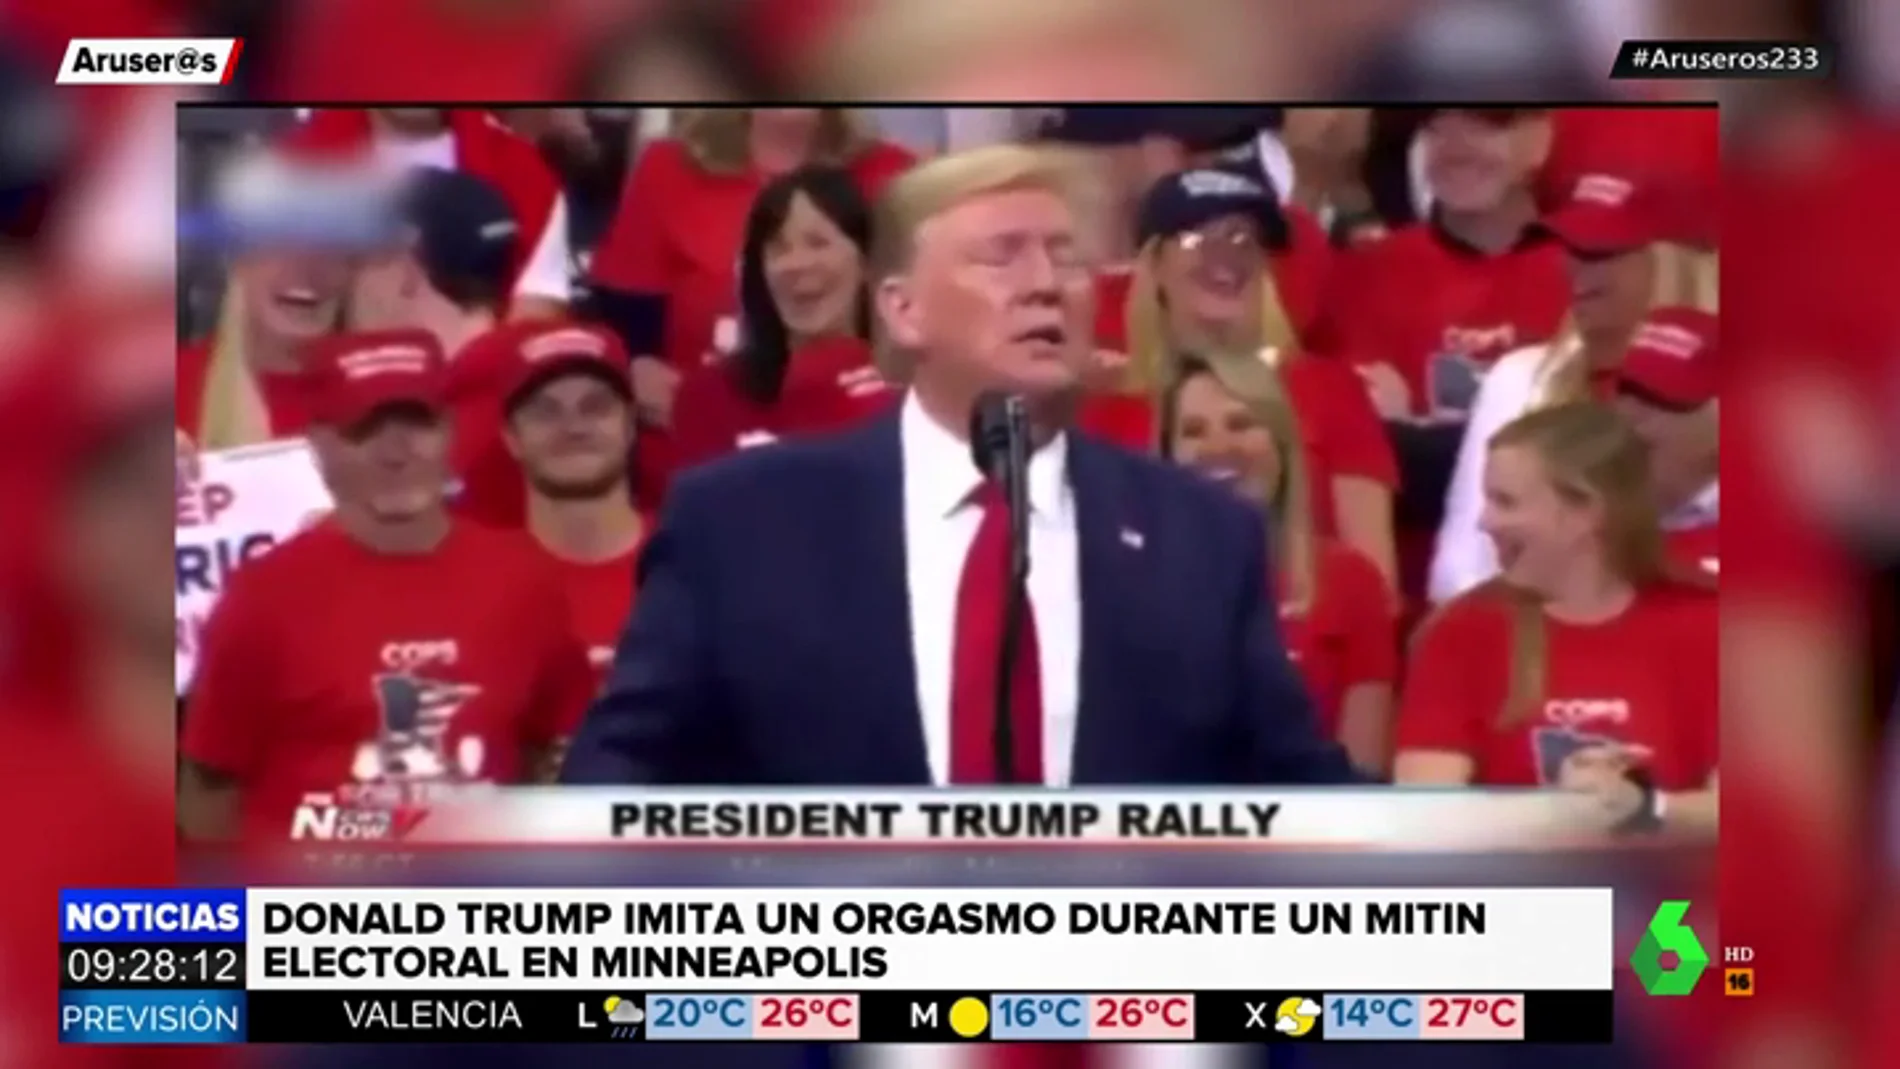 Trump simula un orgasmo durante un mitin electoral en Minneapolis